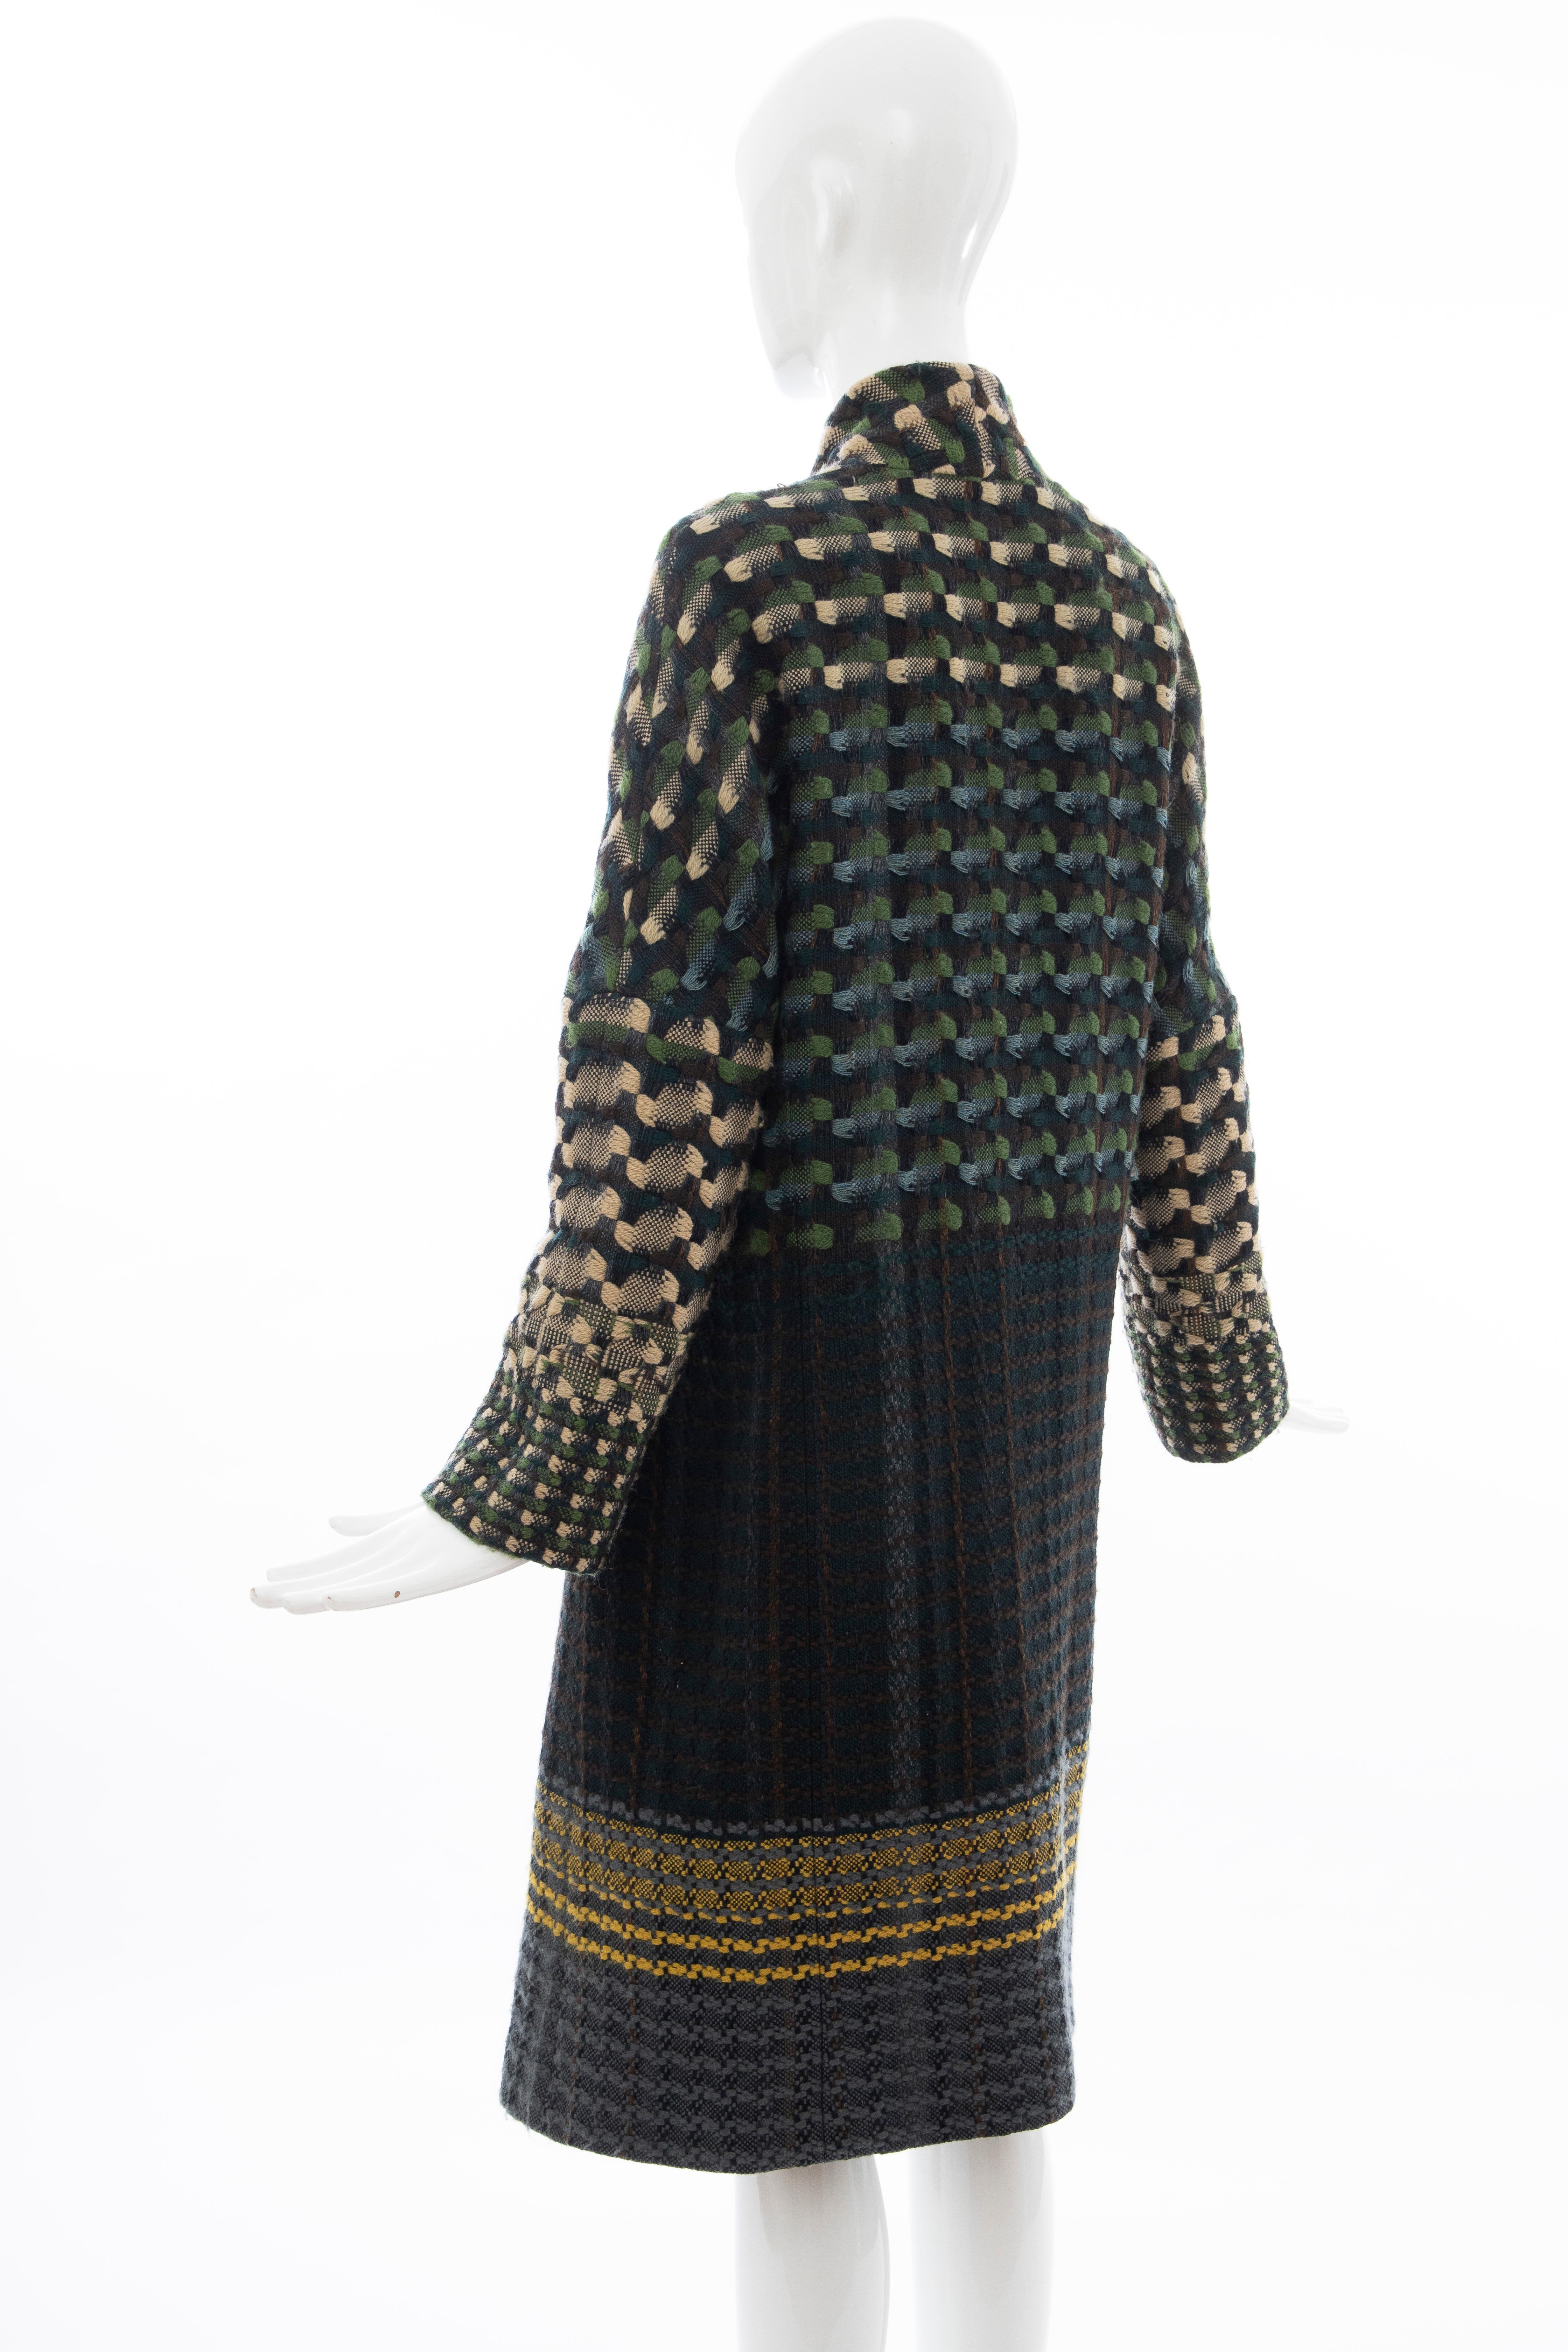 Dries van Noten Runway Wool Plain Weave Tweed Coat, Fall 2004 For Sale 3